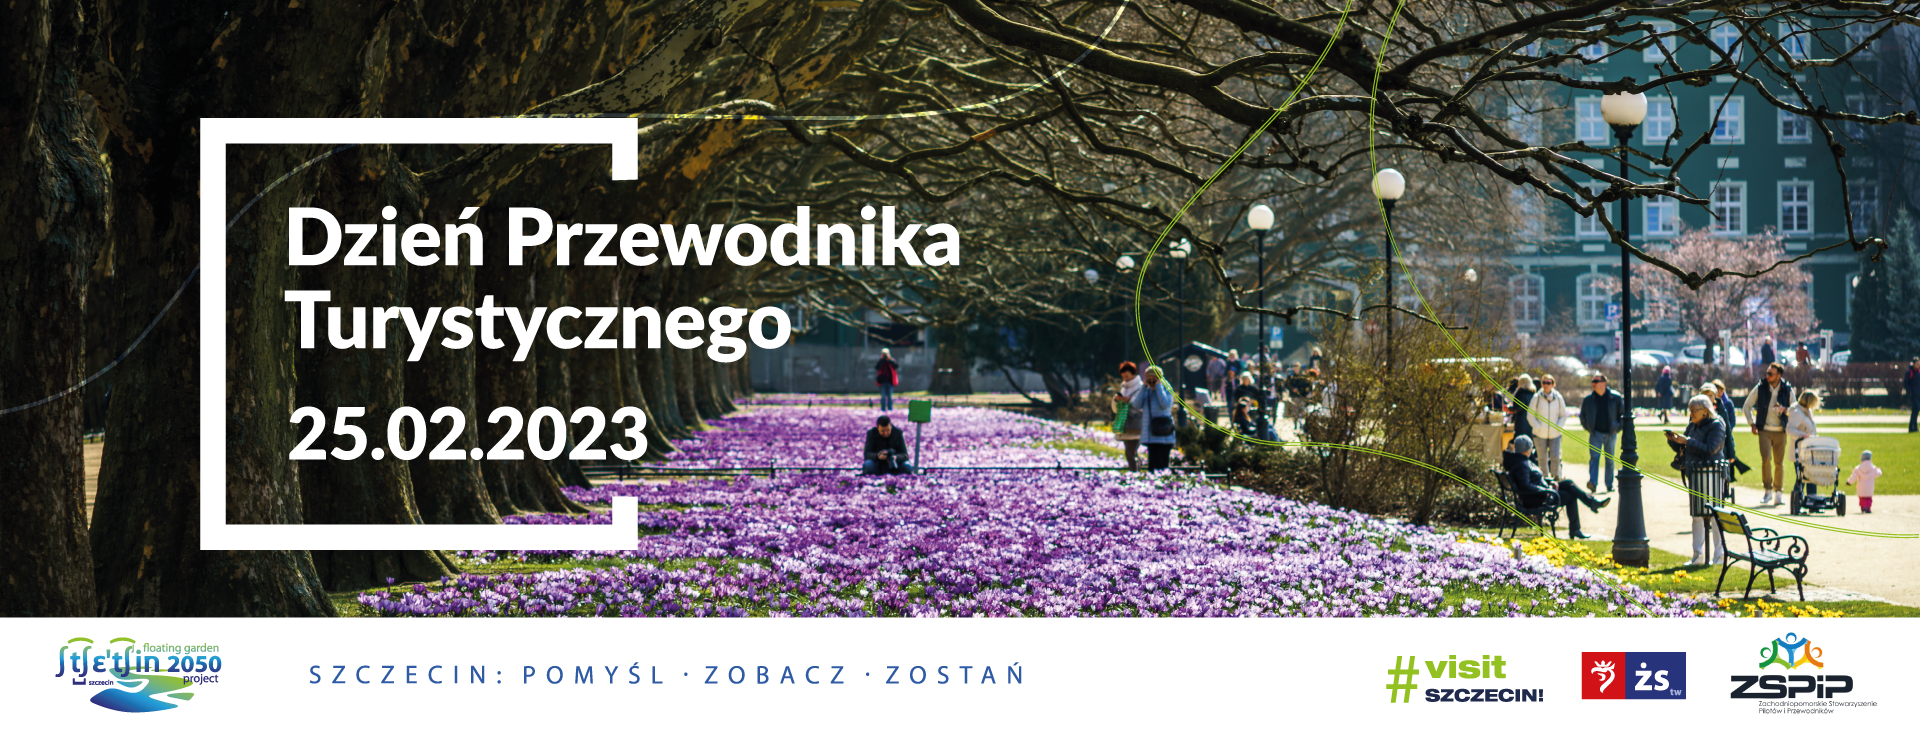 Międzynarodowy Dzień Przewodnika Turystycznego w Szczecinie 